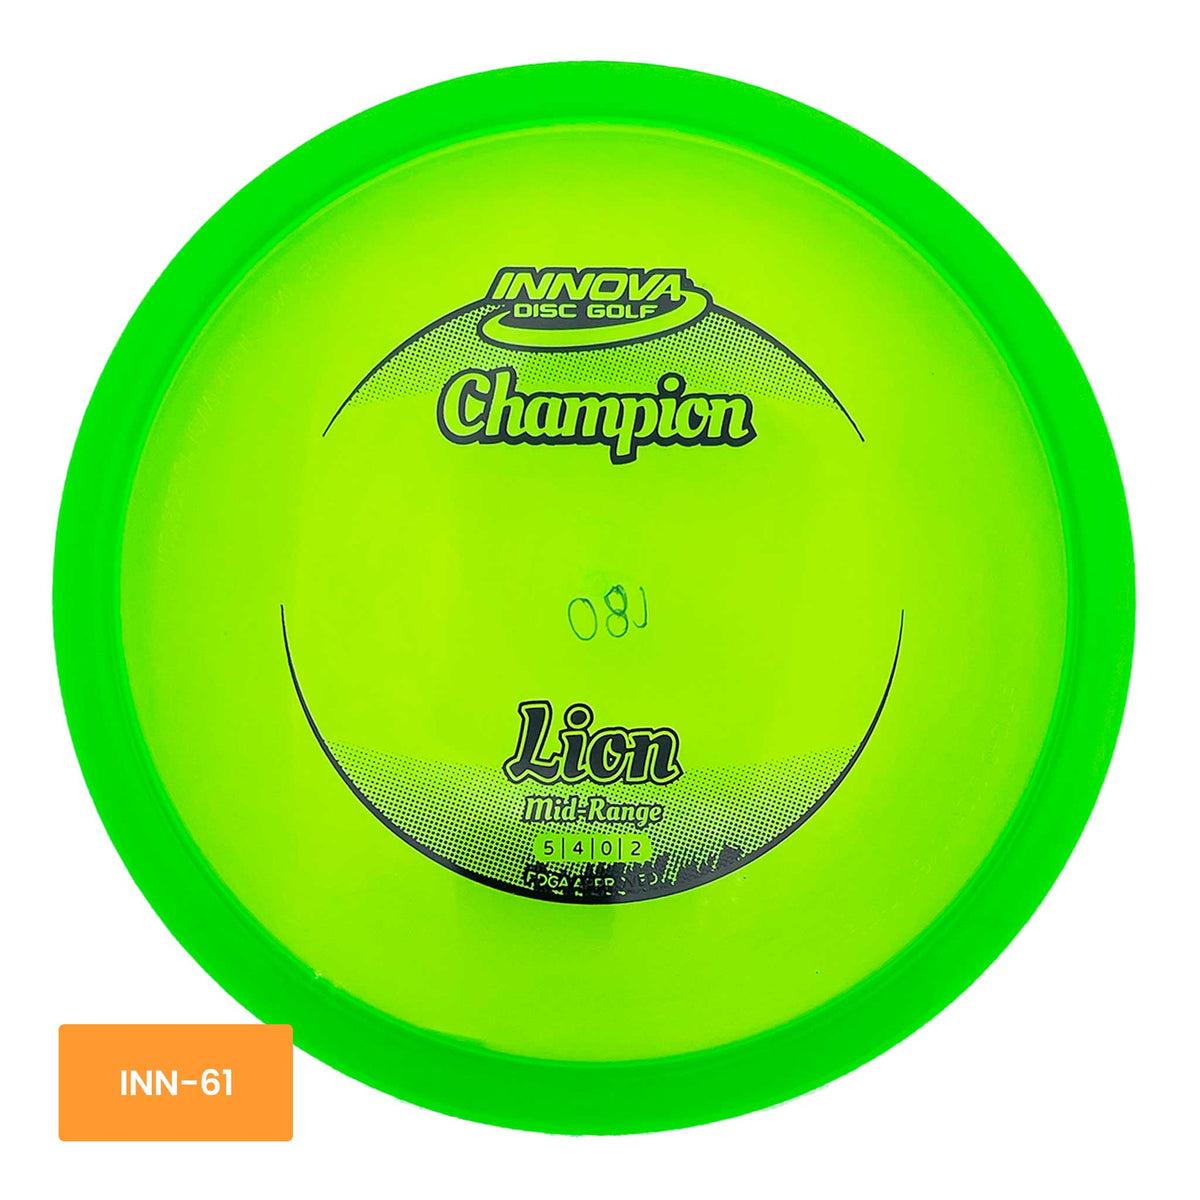 Innova Disc Golf Champion Lion midrange - Green